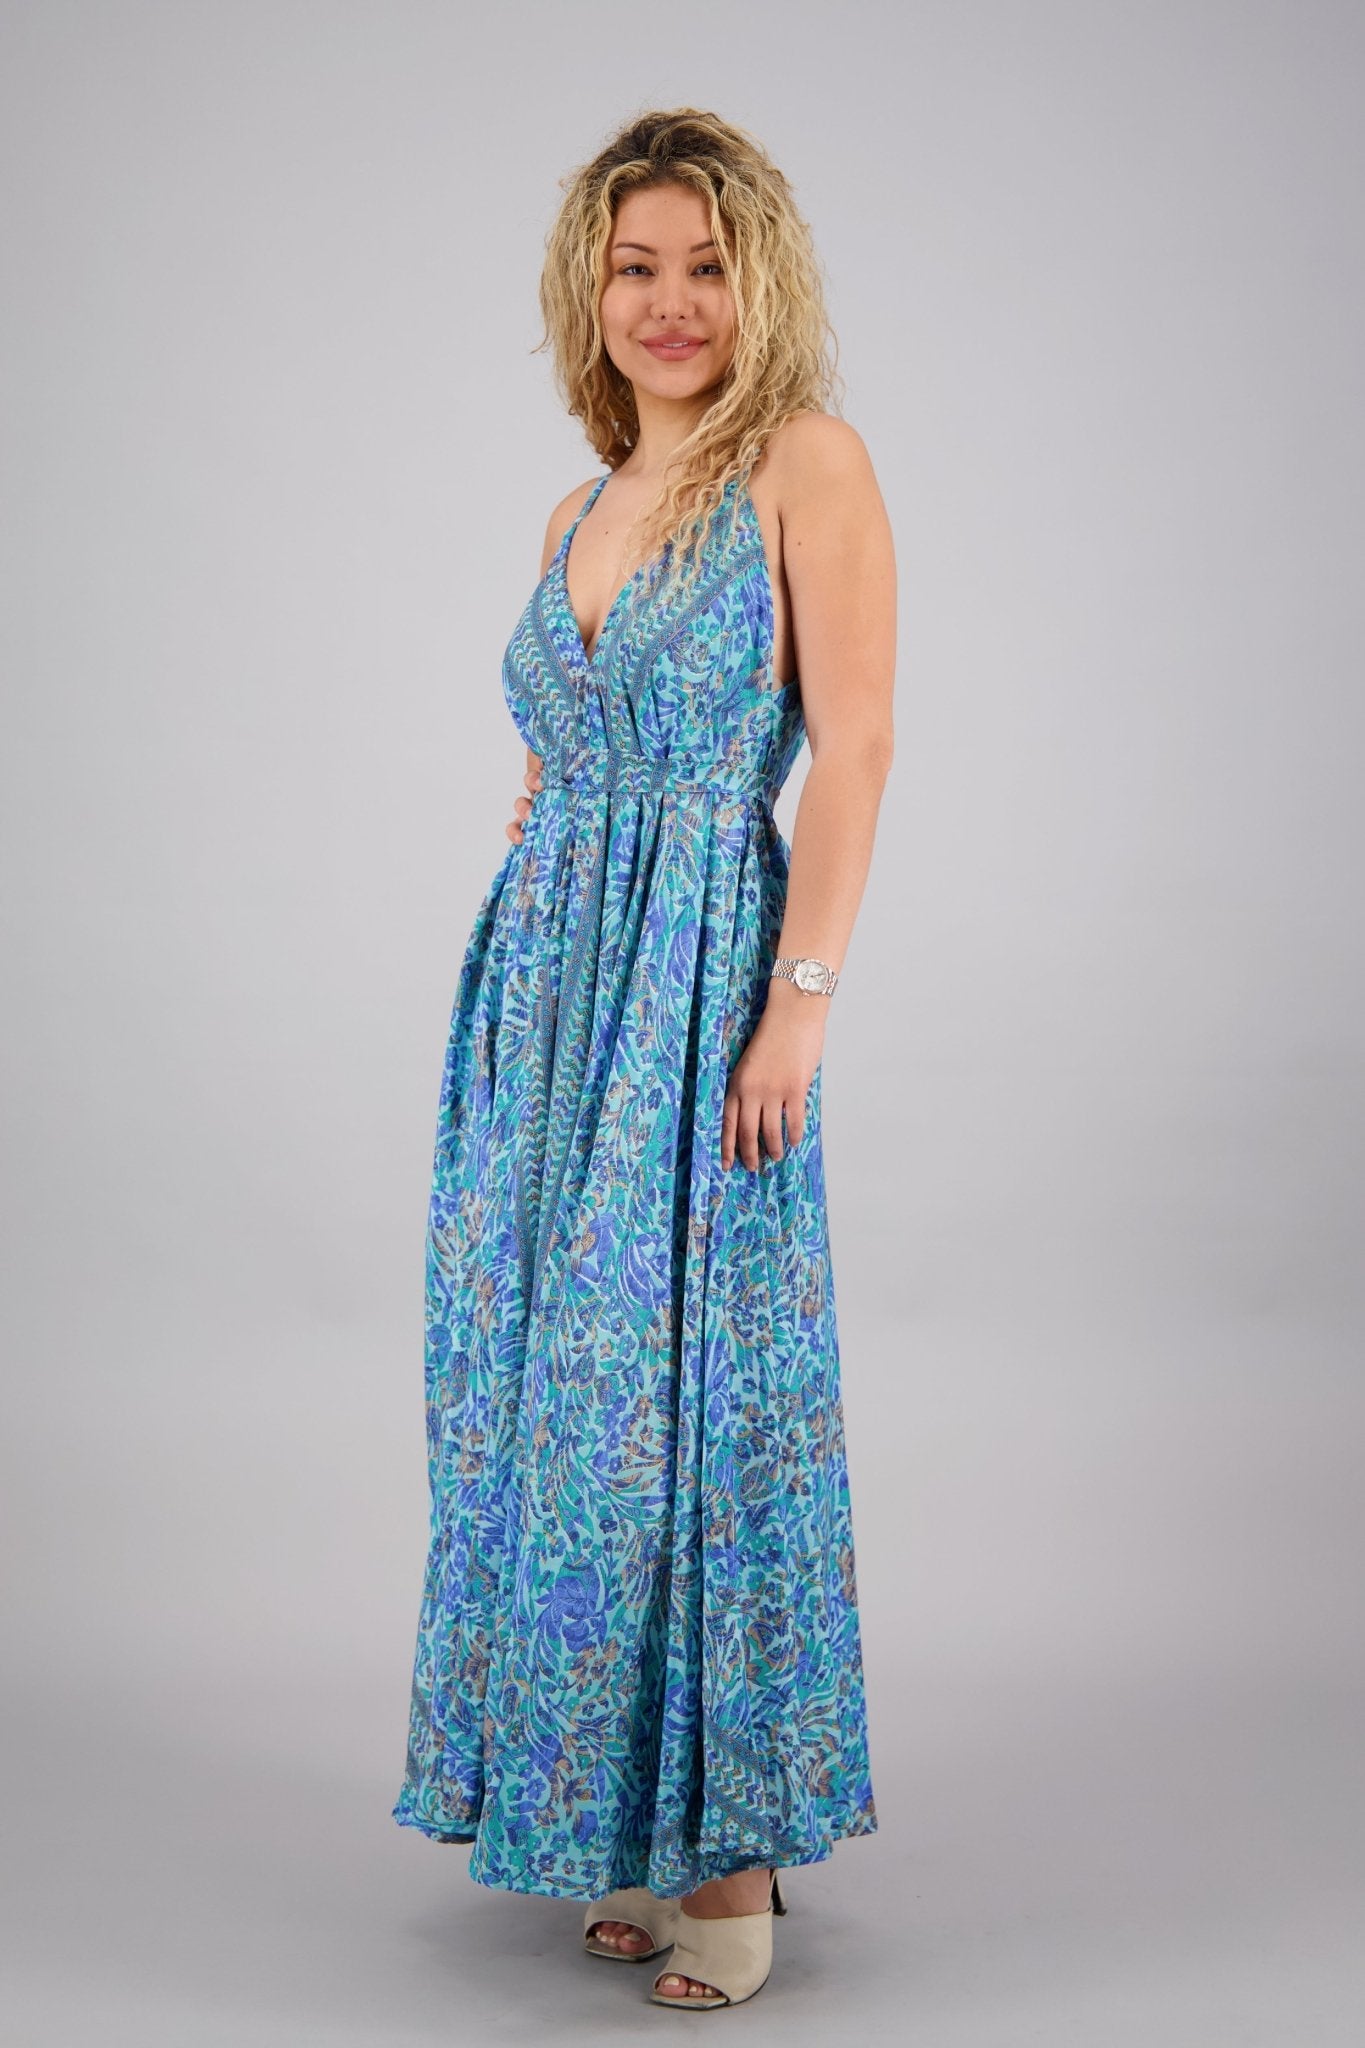 Pastel Floral Print Silk Maxi Dress AB16073 - Advance Apparels Inc